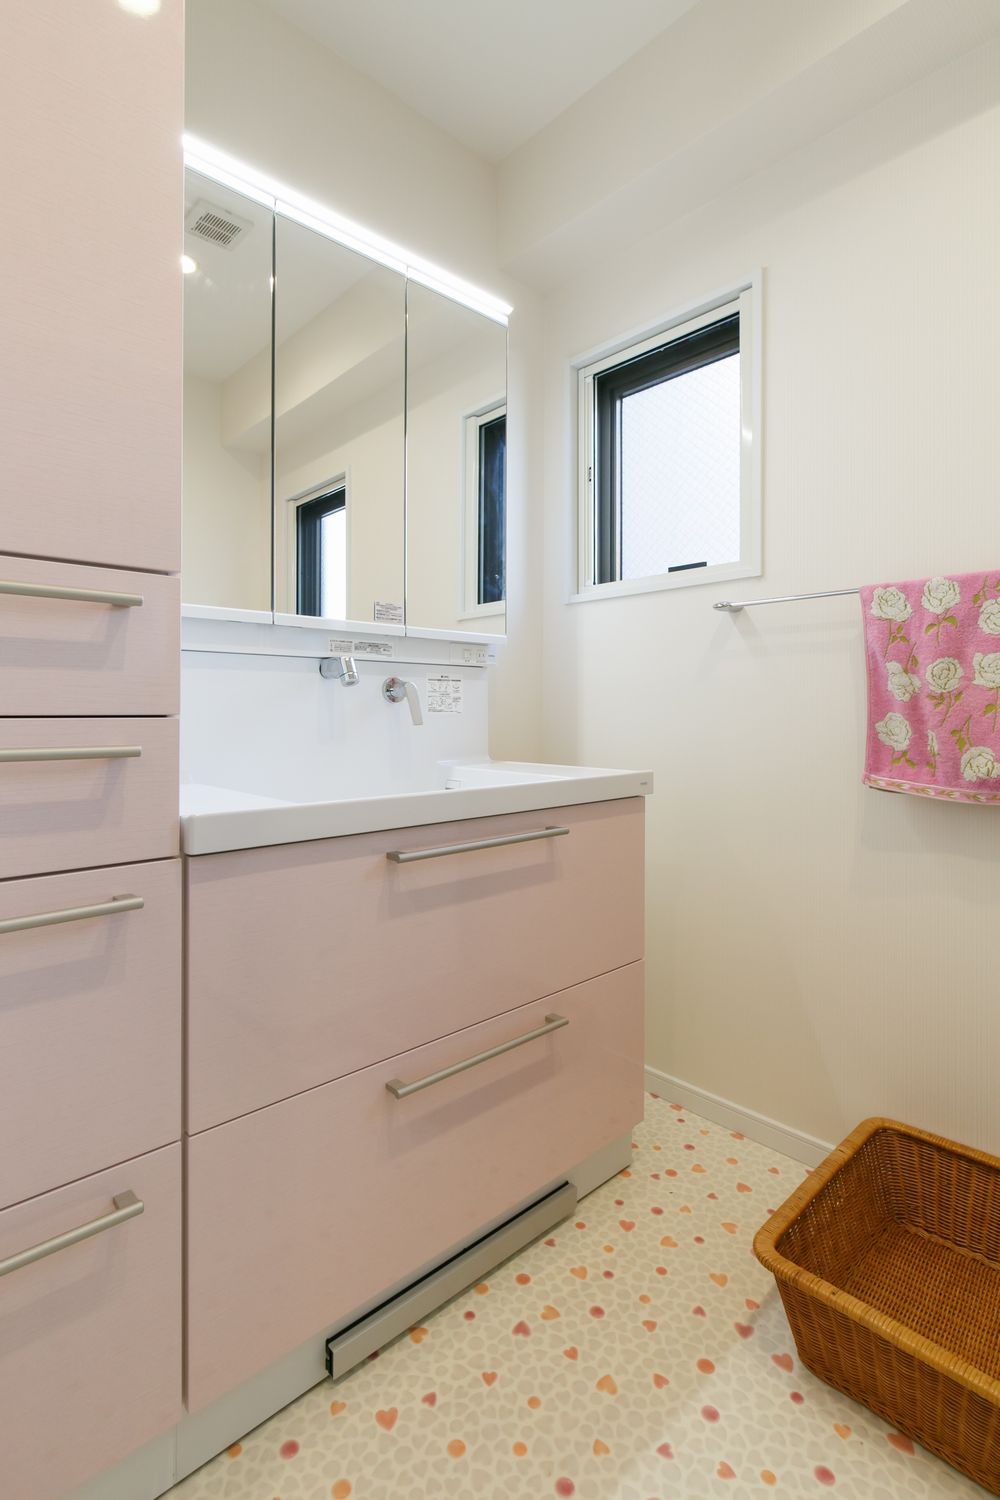 ハート柄の床材とピンクの扉柄がかわいい洗面リフォーム事例